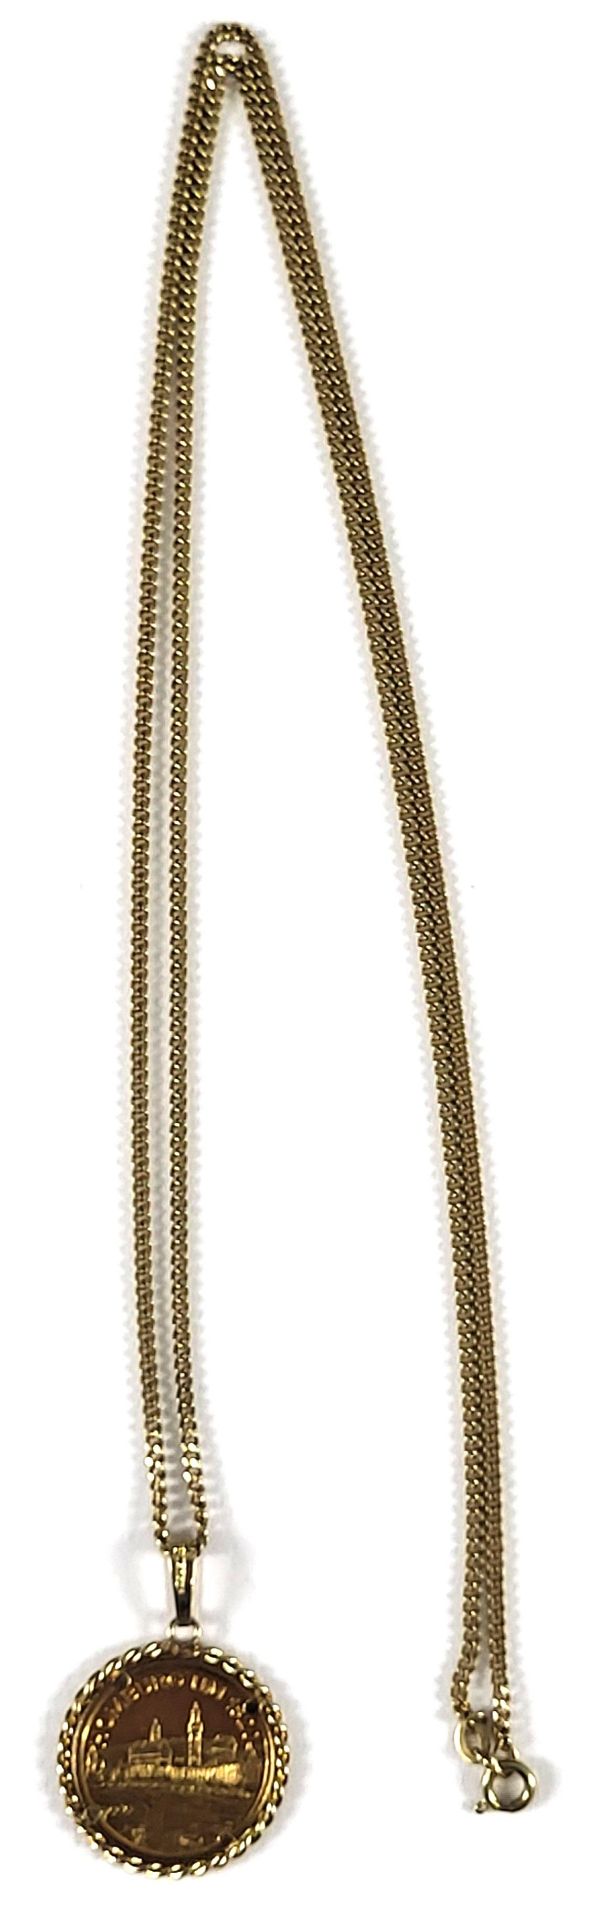 Halskette mit gefasster Goldmedaille Homburg um 1820 - Bild 3 aus 4